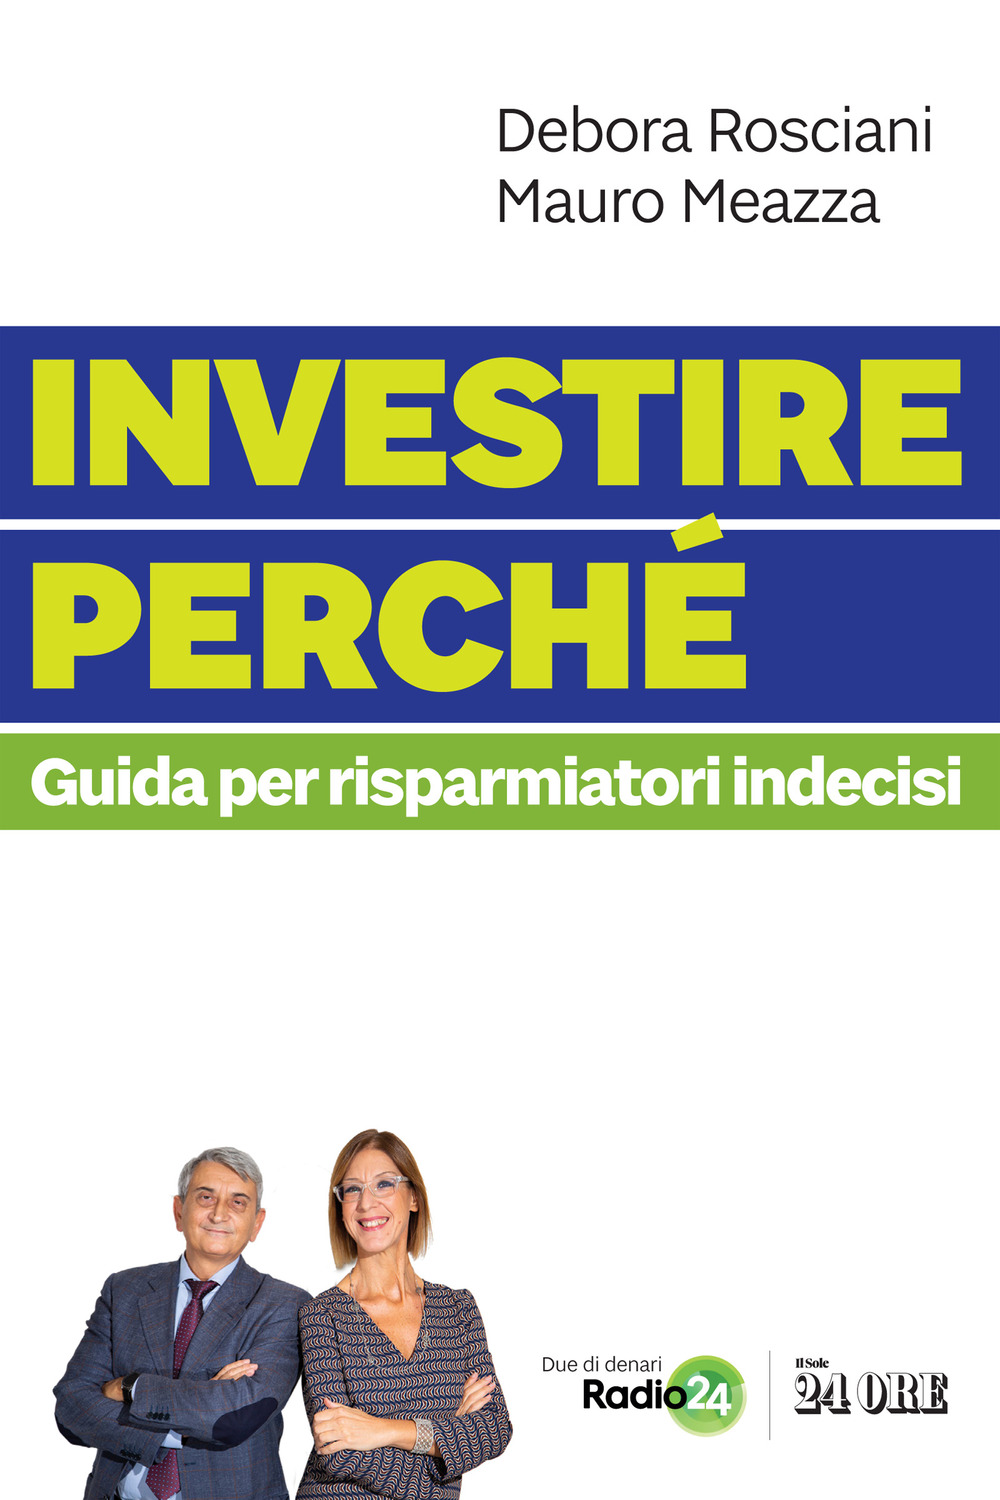 Libri Debora Rosciani / Meazza Mauro - Investire Perche. Guida Per Risparmiatori Indecisi NUOVO SIGILLATO, EDIZIONE DEL 11/11/2021 SUBITO DISPONIBILE